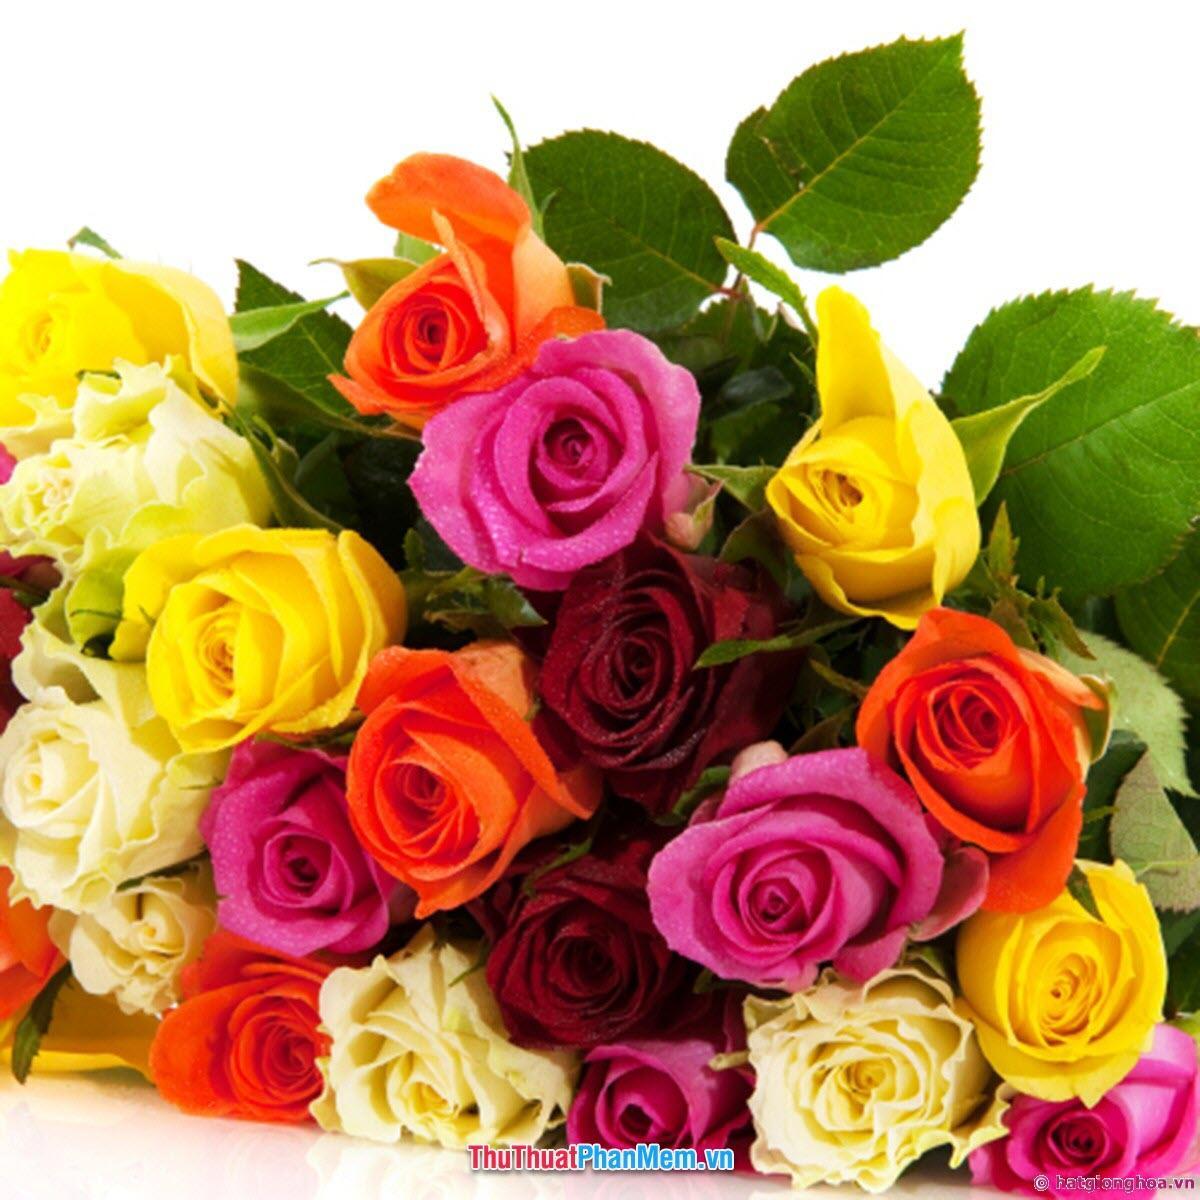 Đóa hoa hồng nhiều màu sắc tặng mẹ nhân ngày quốc tế phụ nữ